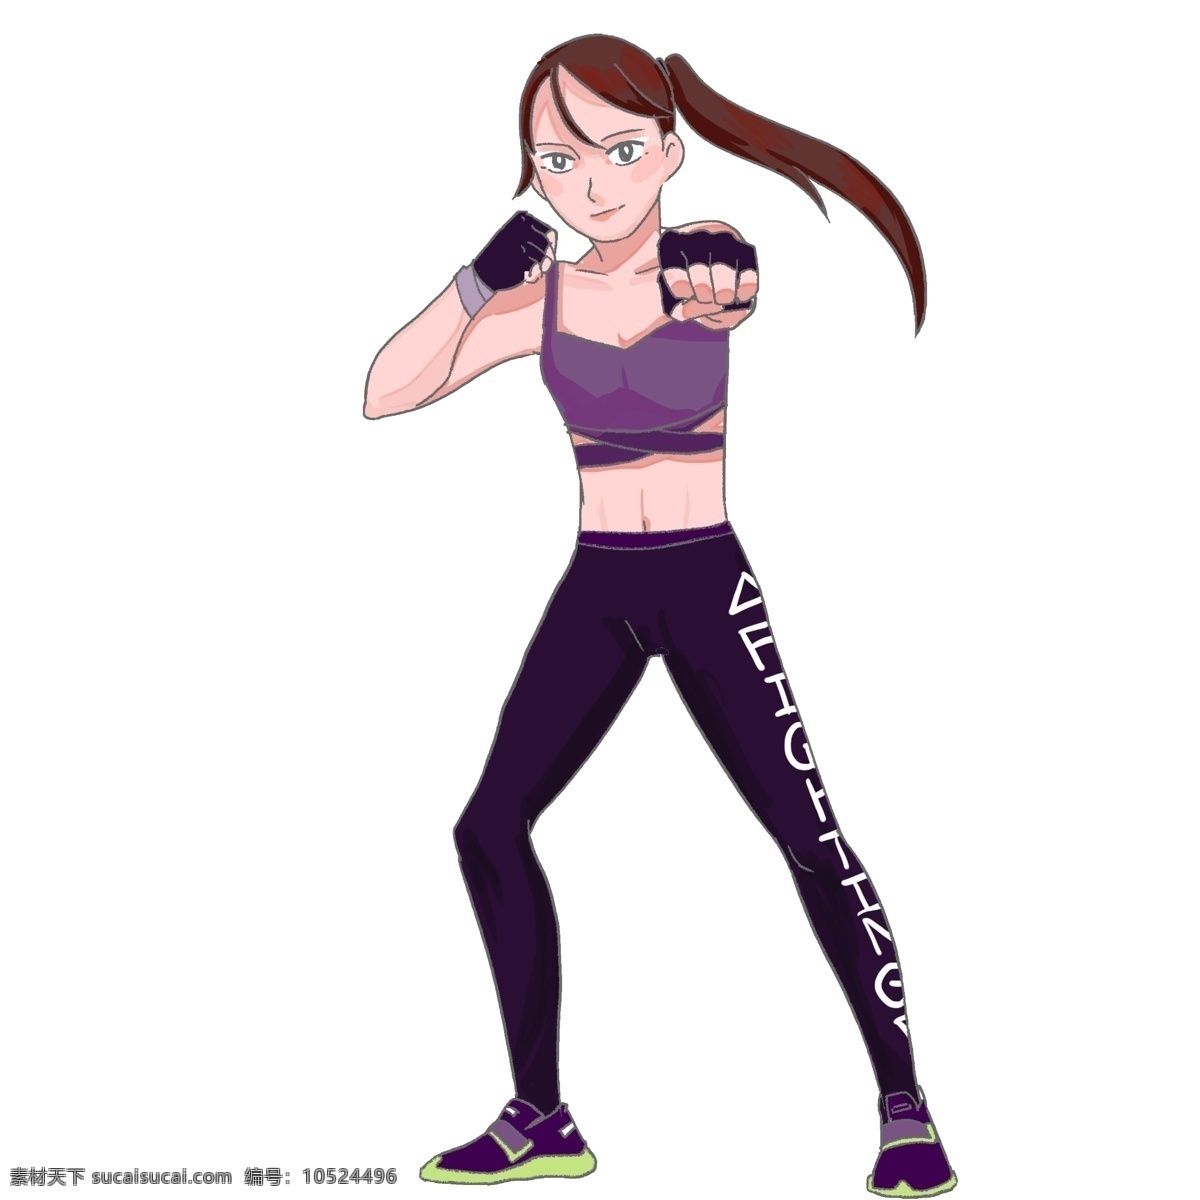 健身 运动 打拳 击 女孩 手绘 插画 户外健身 运动卡通设计 健身大人 健身教练 扁平运动 春季运动 美体健身 跑步卡通 跑步女孩 运动健身 健身卡